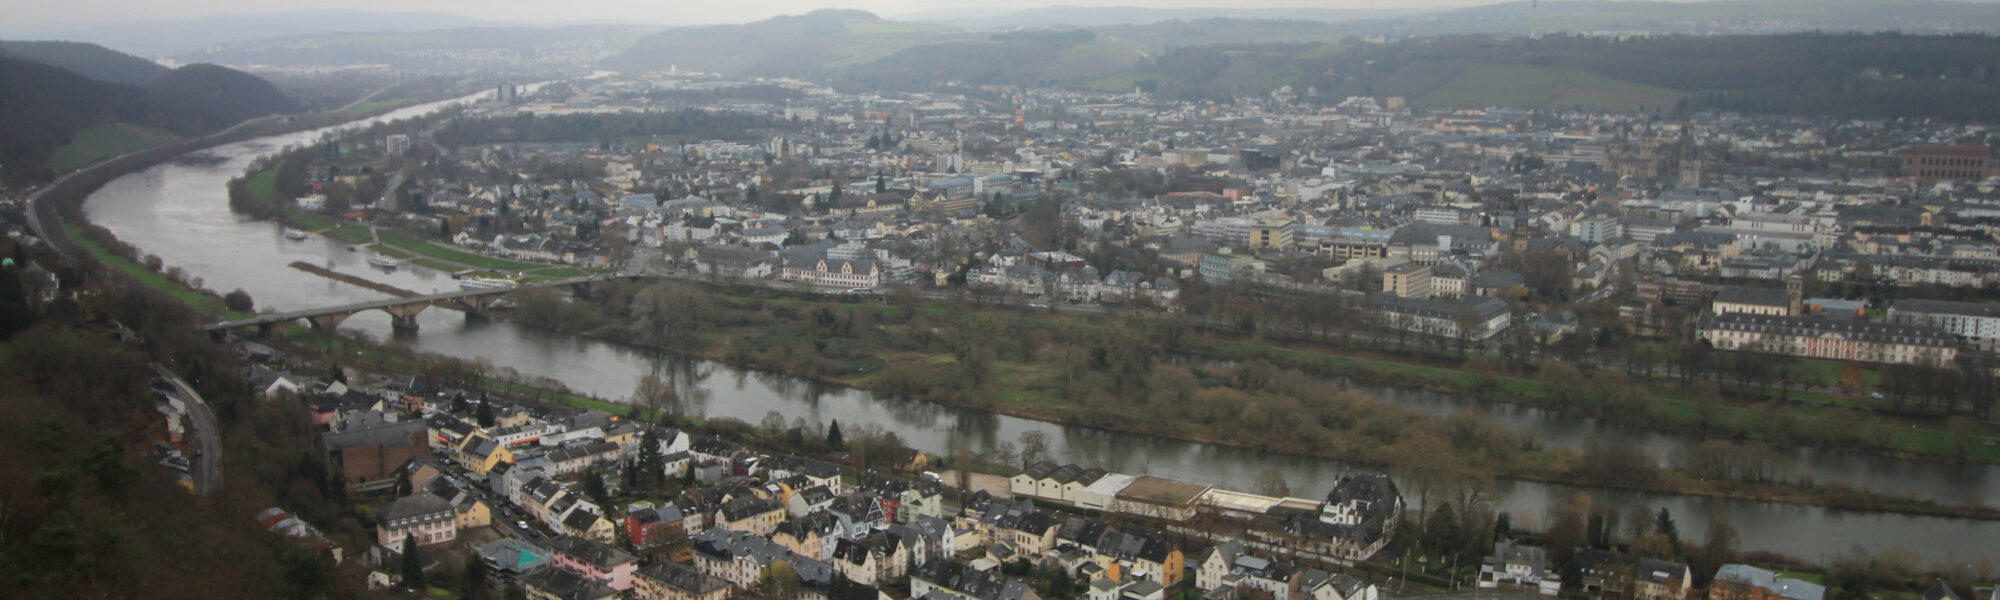 Trier - Duitsland